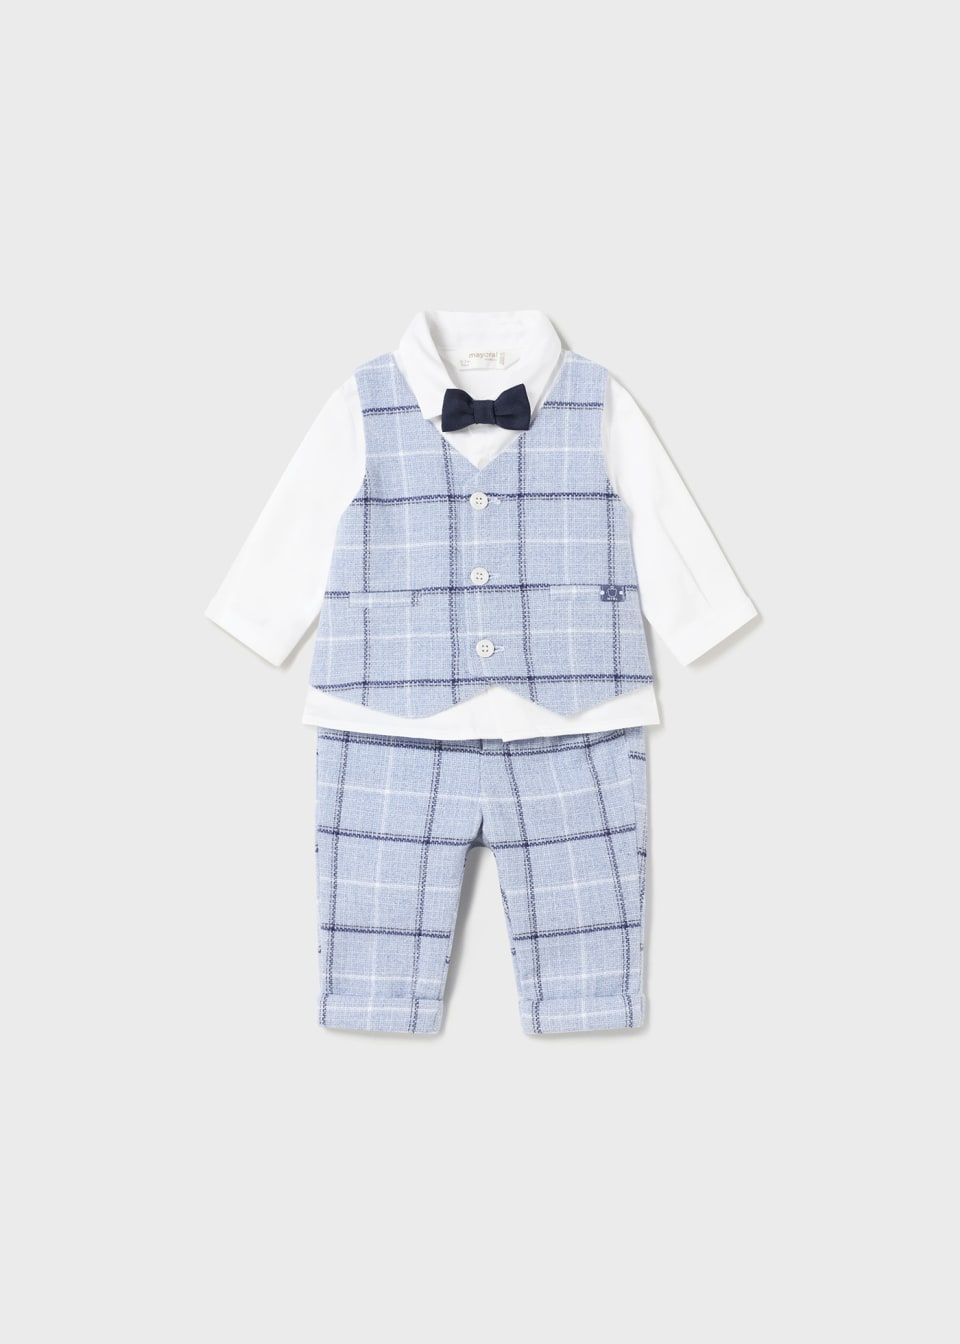 Baby Boy Vest/Shirt/Bowtie/Pants Set - The Village Retail